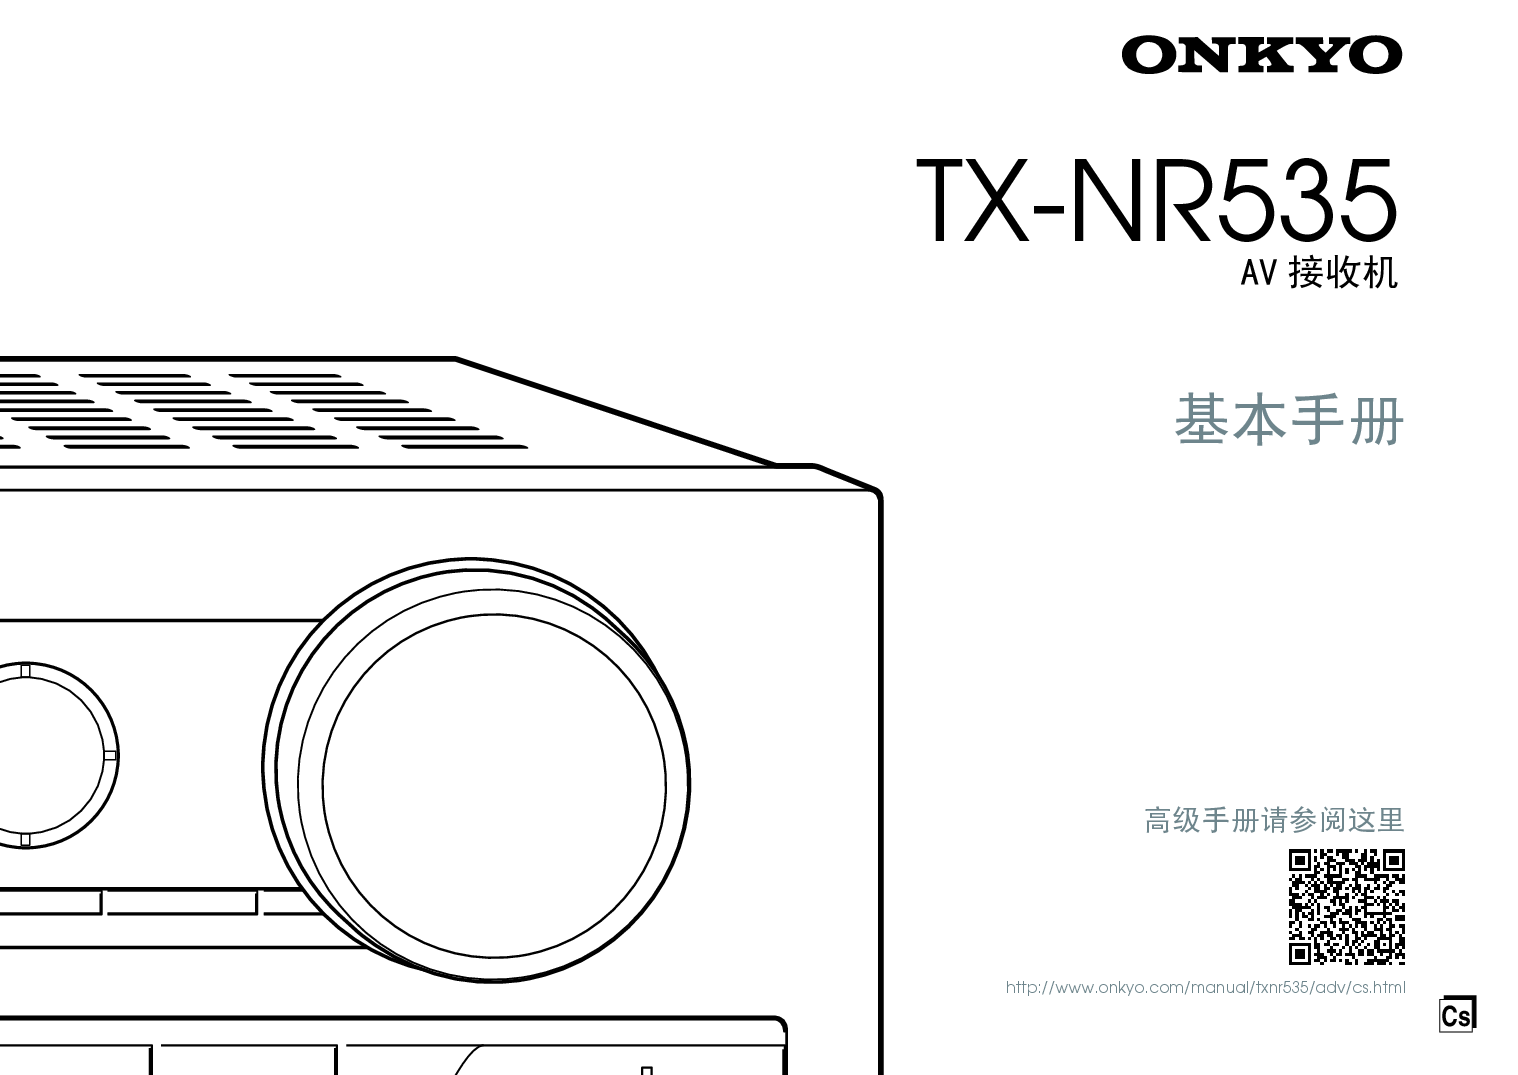 安桥 Onkyo TX-NR535 基础使用手册 封面